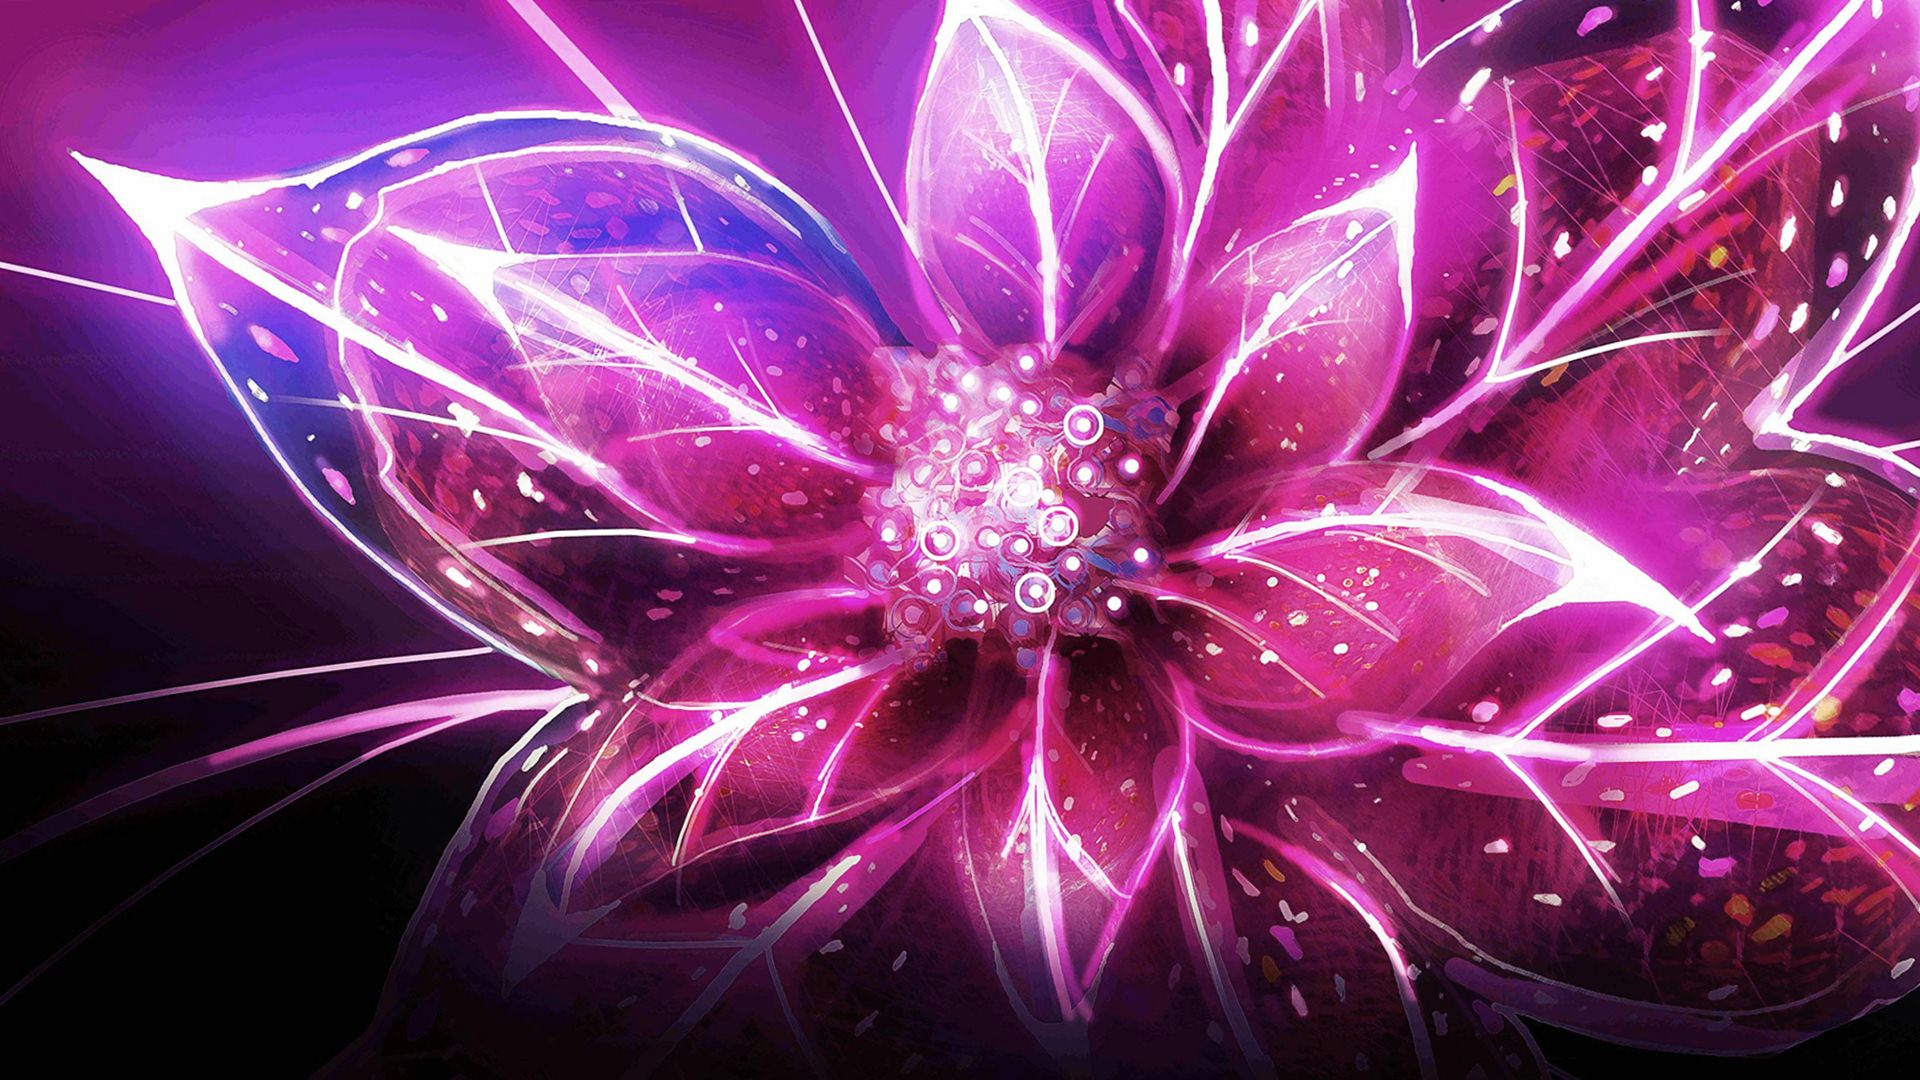 Free download High Resolution Cool 3D Flower Desktop Wallpaper HD